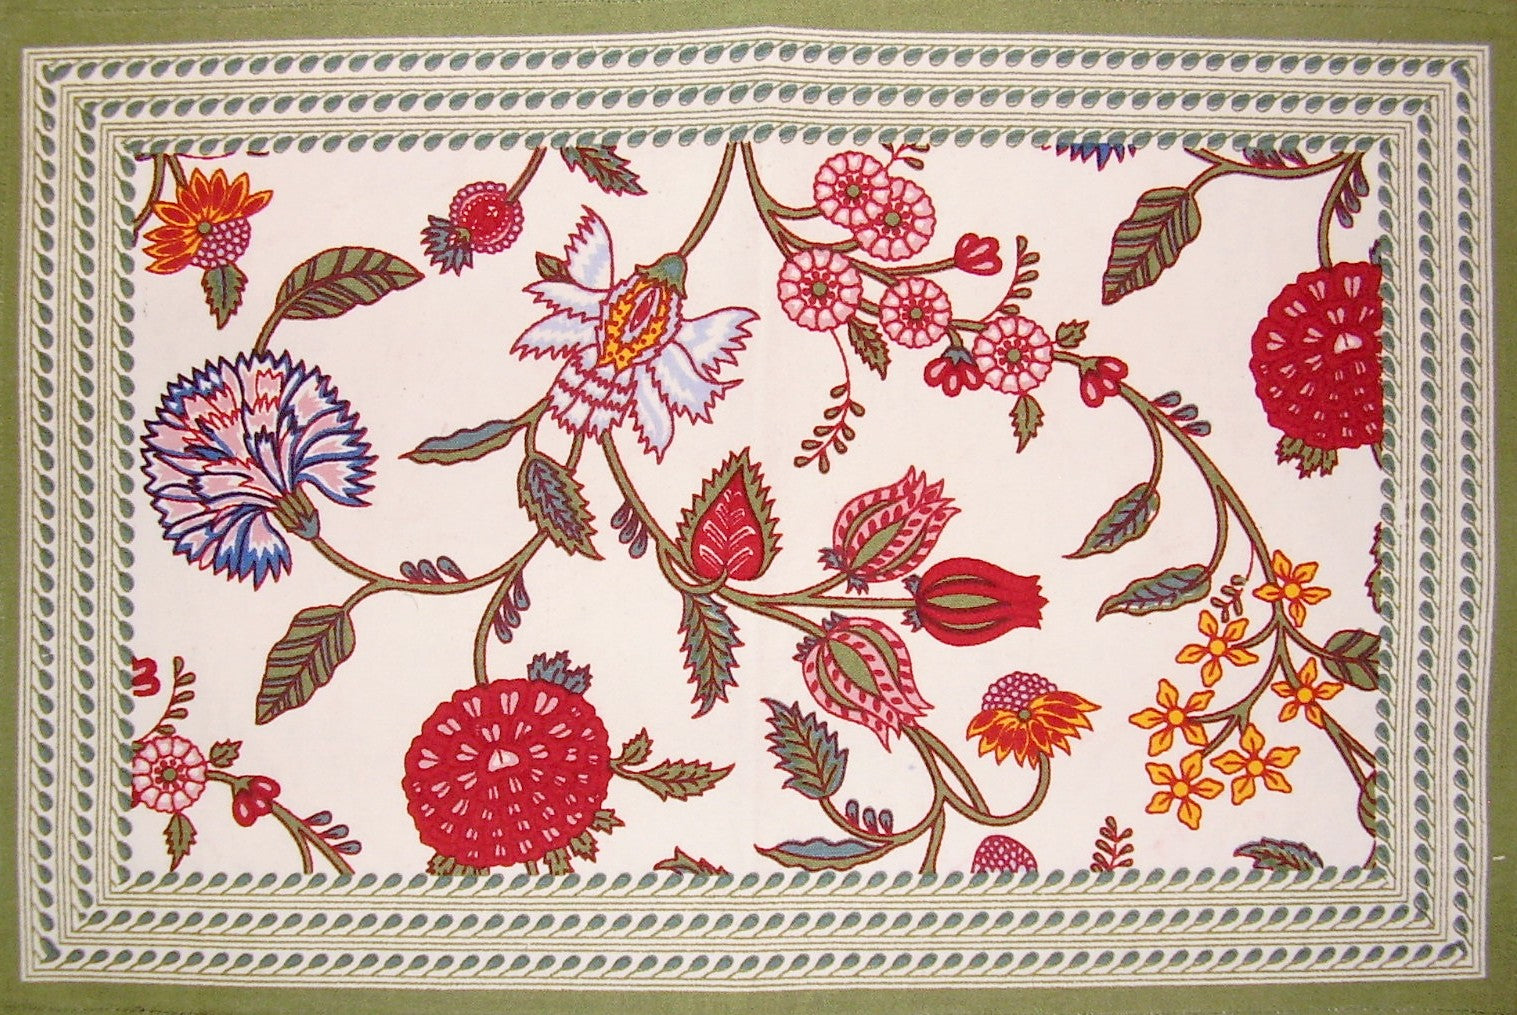 แผ่นรองจานผ้าฝ้ายลายดอกไม้เบอร์รี่ 19" x 13" คละสี